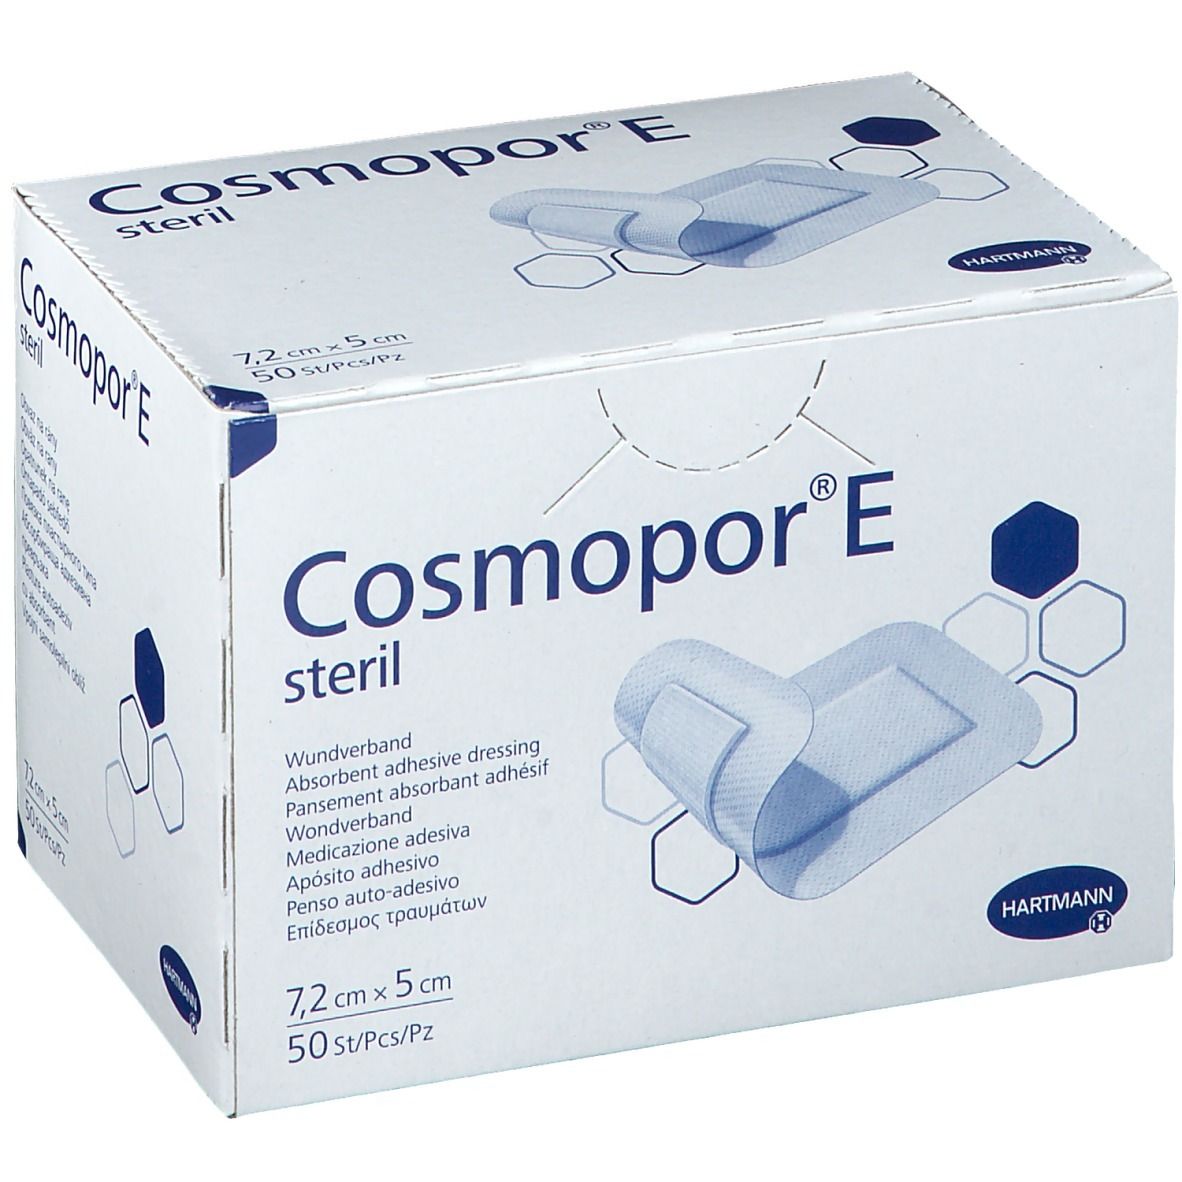 HARTMANN Cosmopor® E steril 7,2 x 5 cm